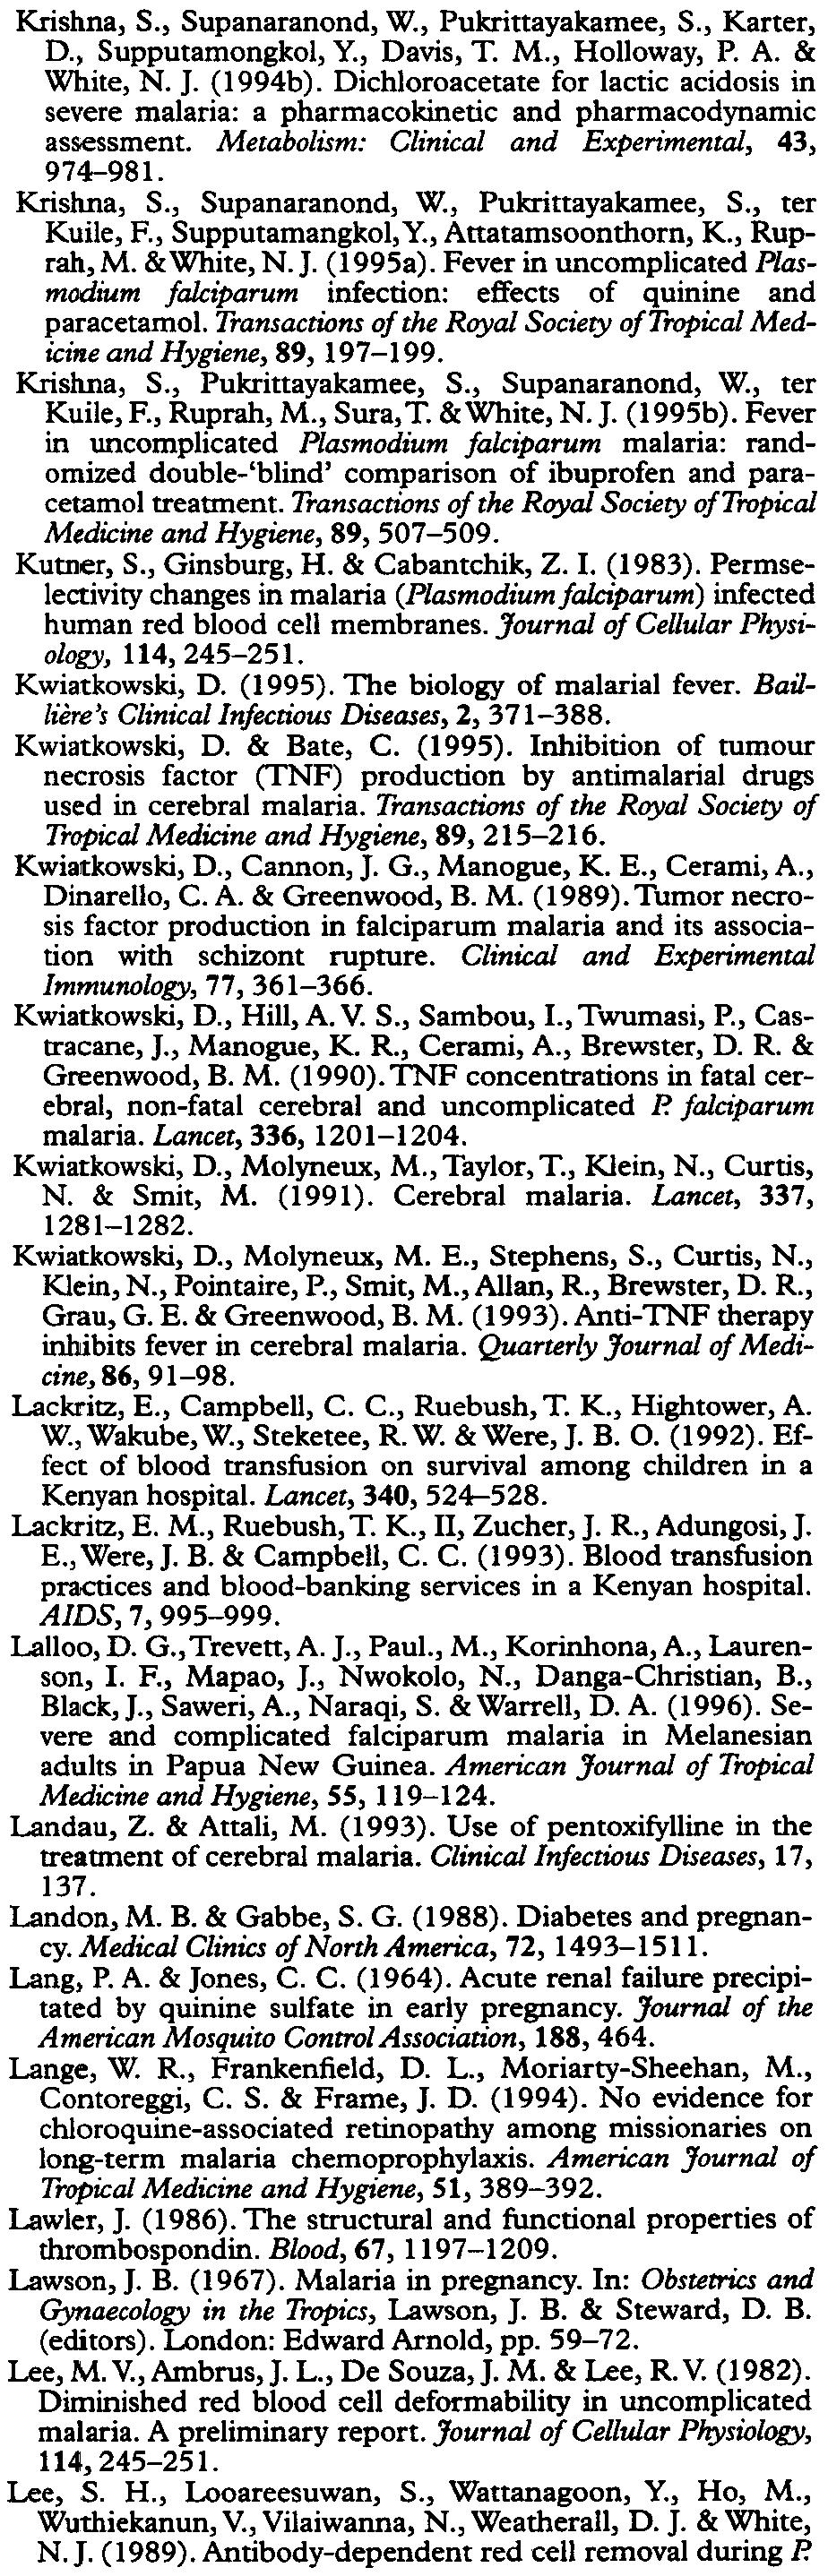 British Journal of Clinical Pharmacology, 2, 477-481. Karbwang, I., Milton, K. A., Na-Bangchang, K., Ward, S. A., Edwards, G. & Bunnag, D. (1991).